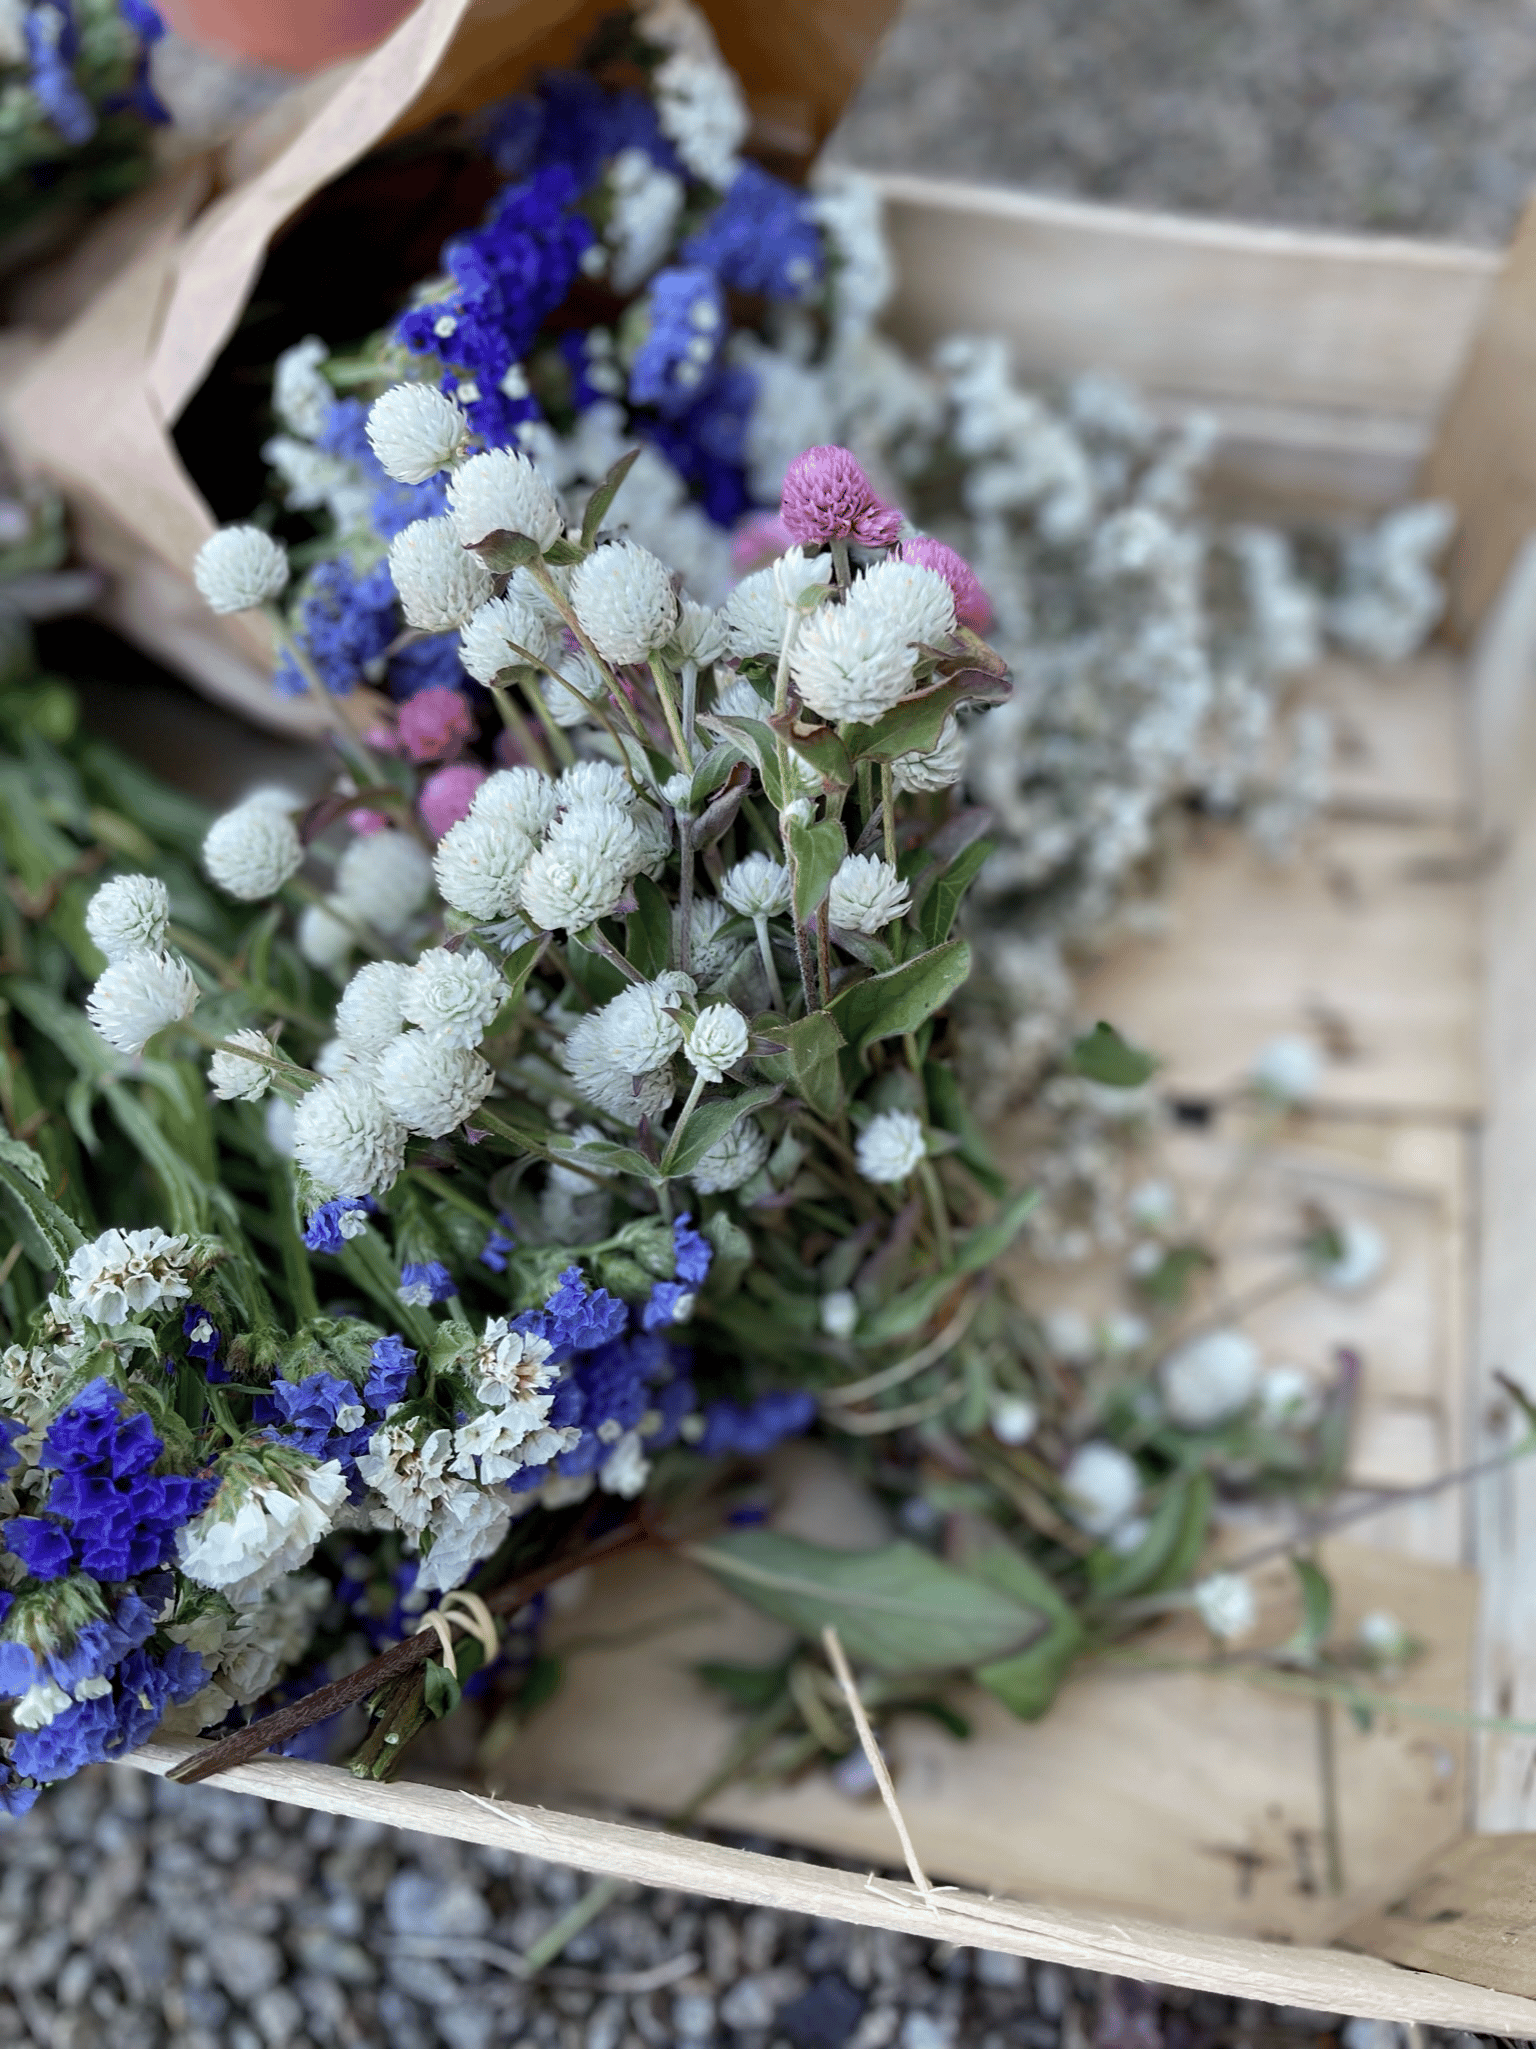 Des bottes de fleurs séchées blanches et bleues